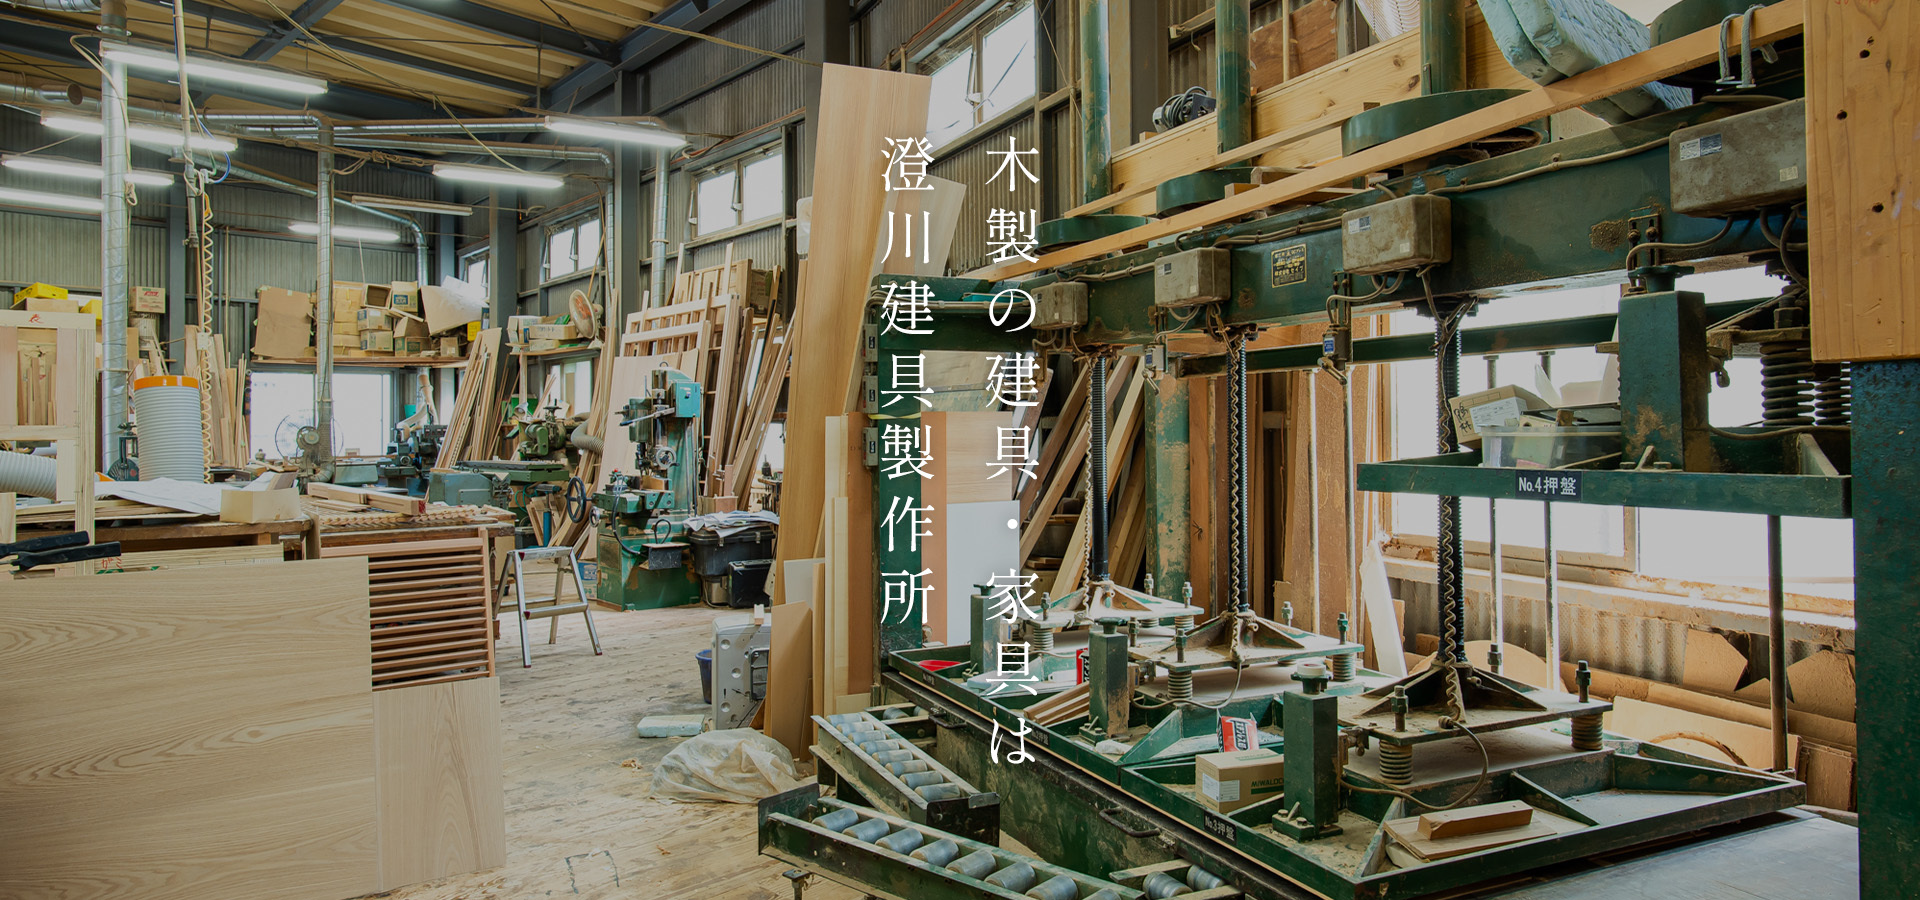 木製の建具・家具は澄川建具製作所